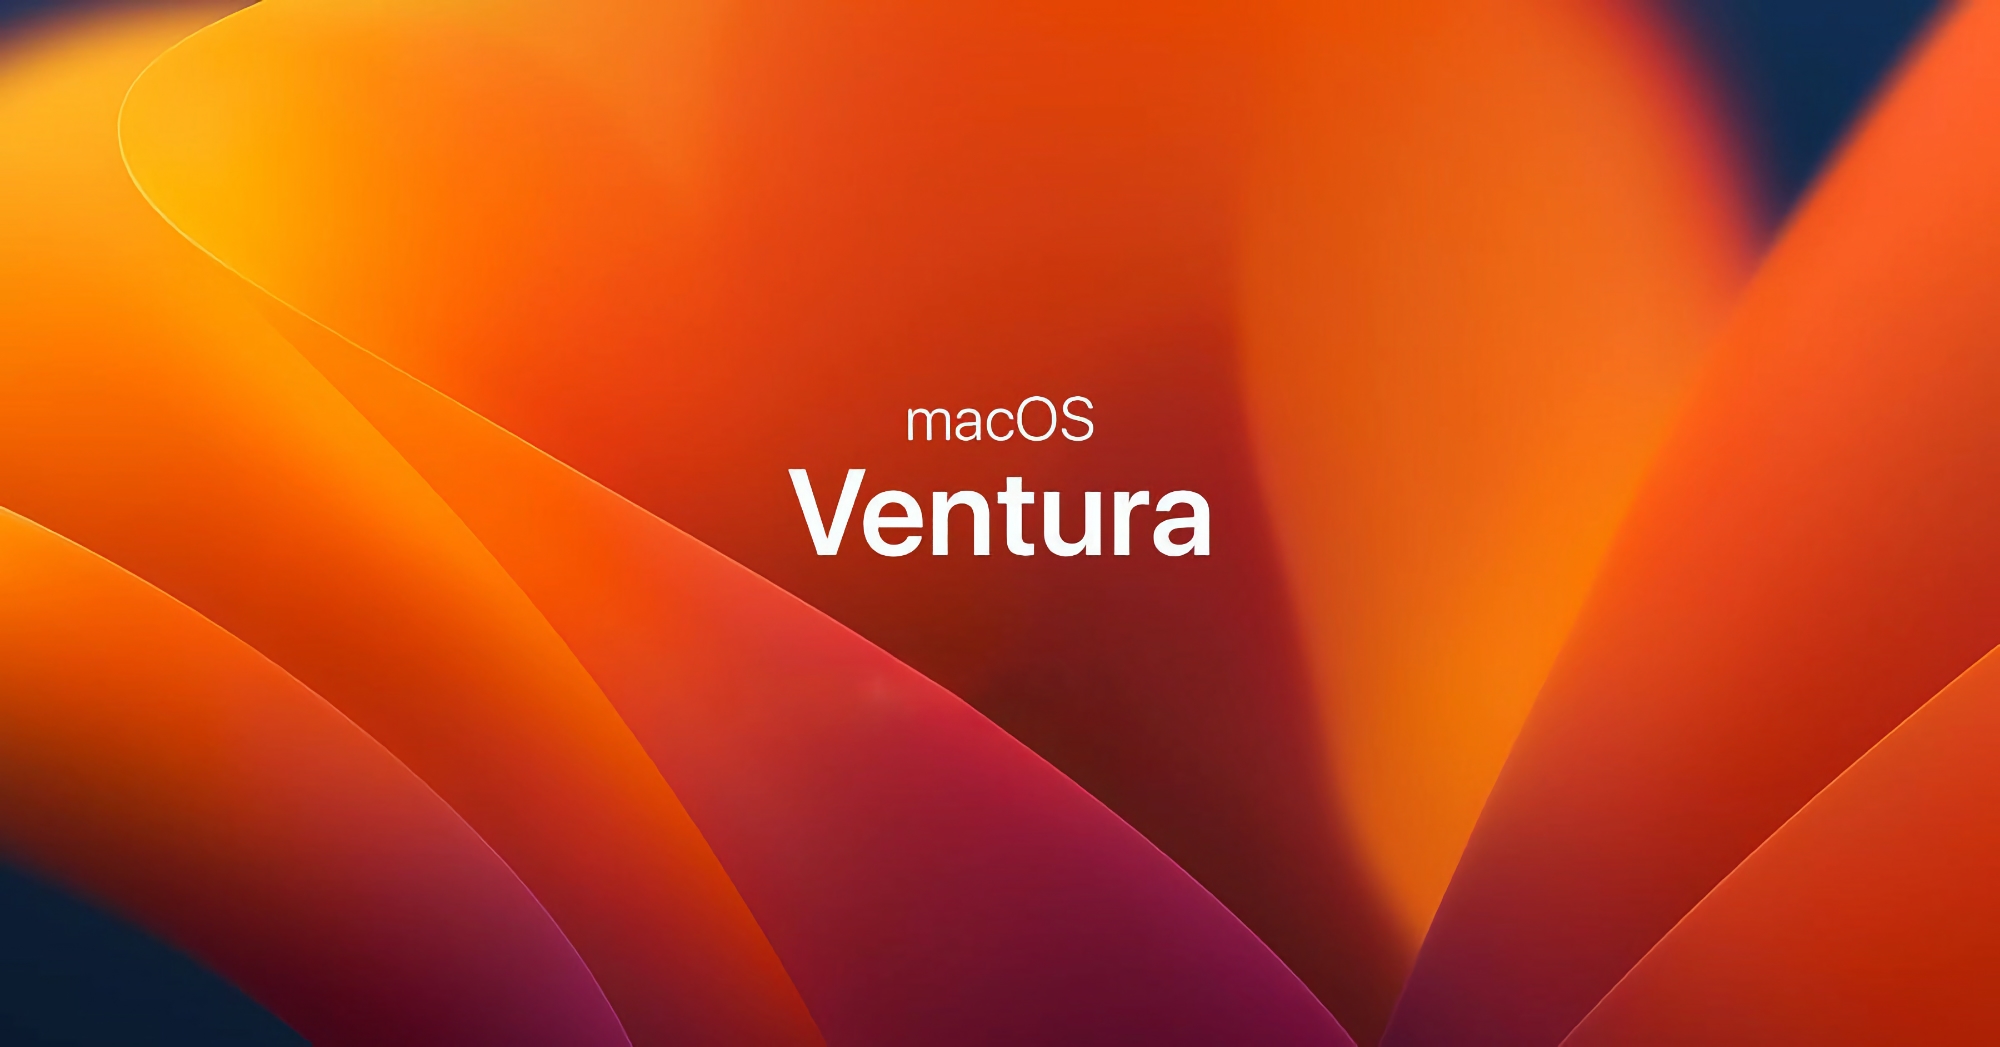 Po iOS 16.5.1: Apple ogłasza macOS Ventura 13.4.1 z poprawkami błędów